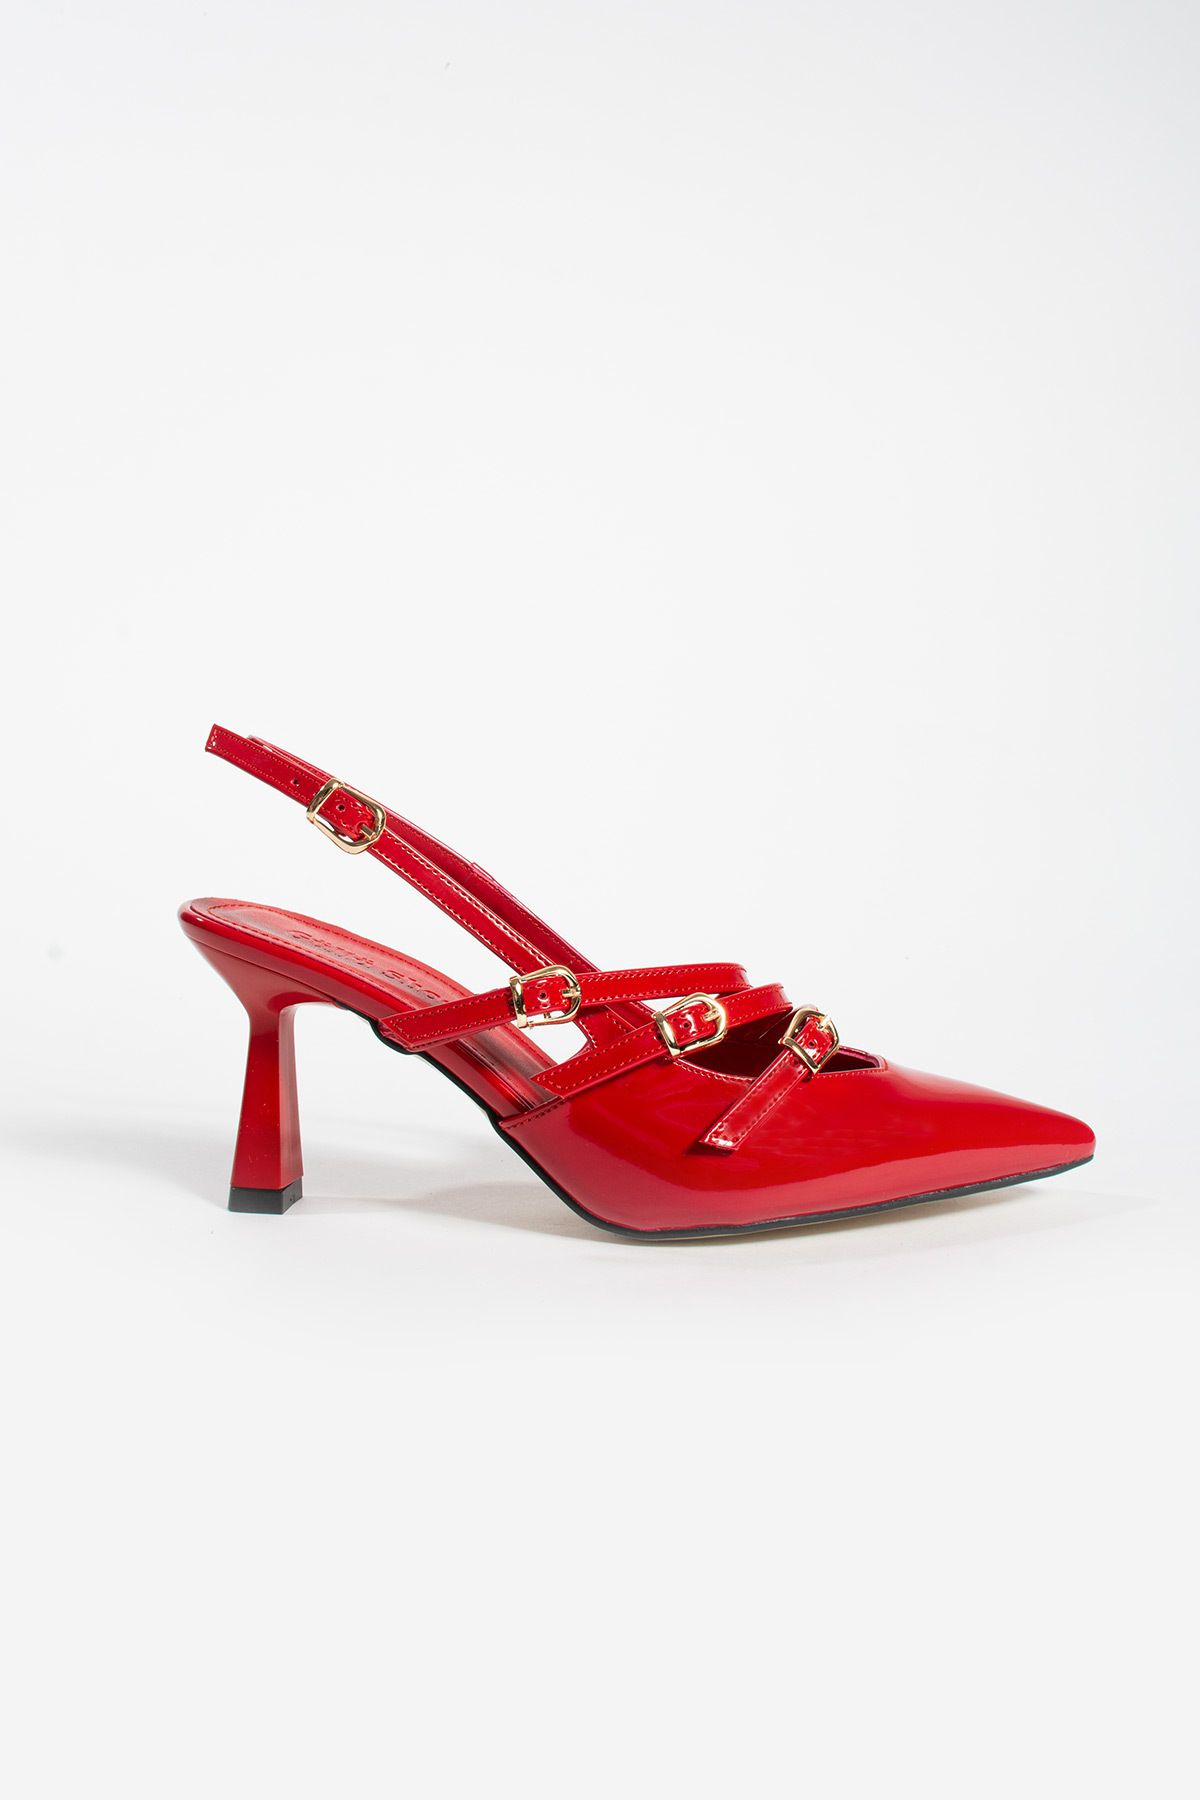 Güllü Shoes Kadın Topuklu Ayakkabı 3 Bantlı Toka Detaylı Sivri Burun Rugan Stiletto Rahat Şık Ve Modern 8cm